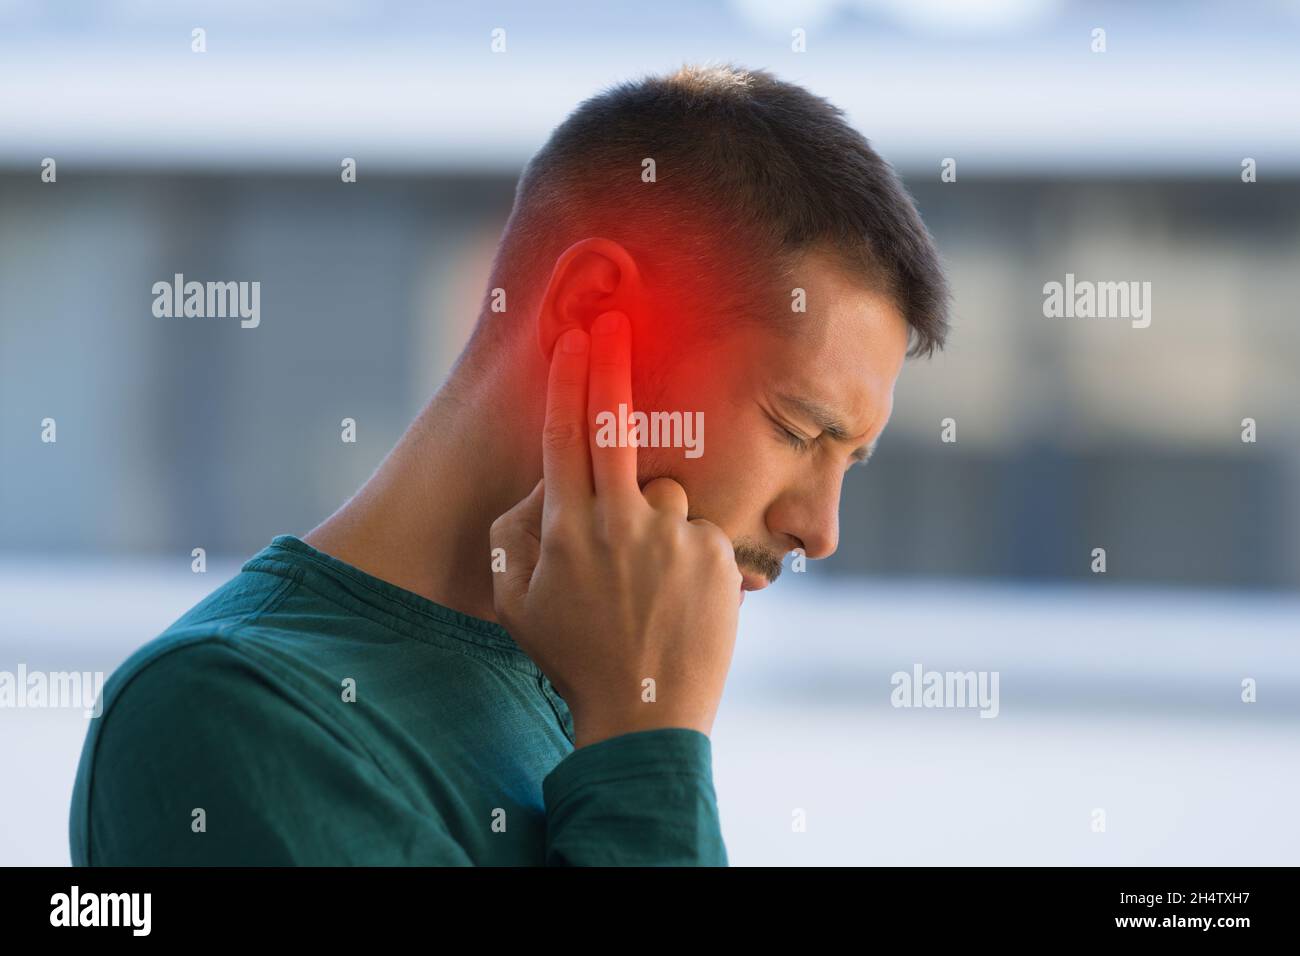 El hombre sufre por fuerte dolor de oído o dolor de oído. Otitis Foto de stock